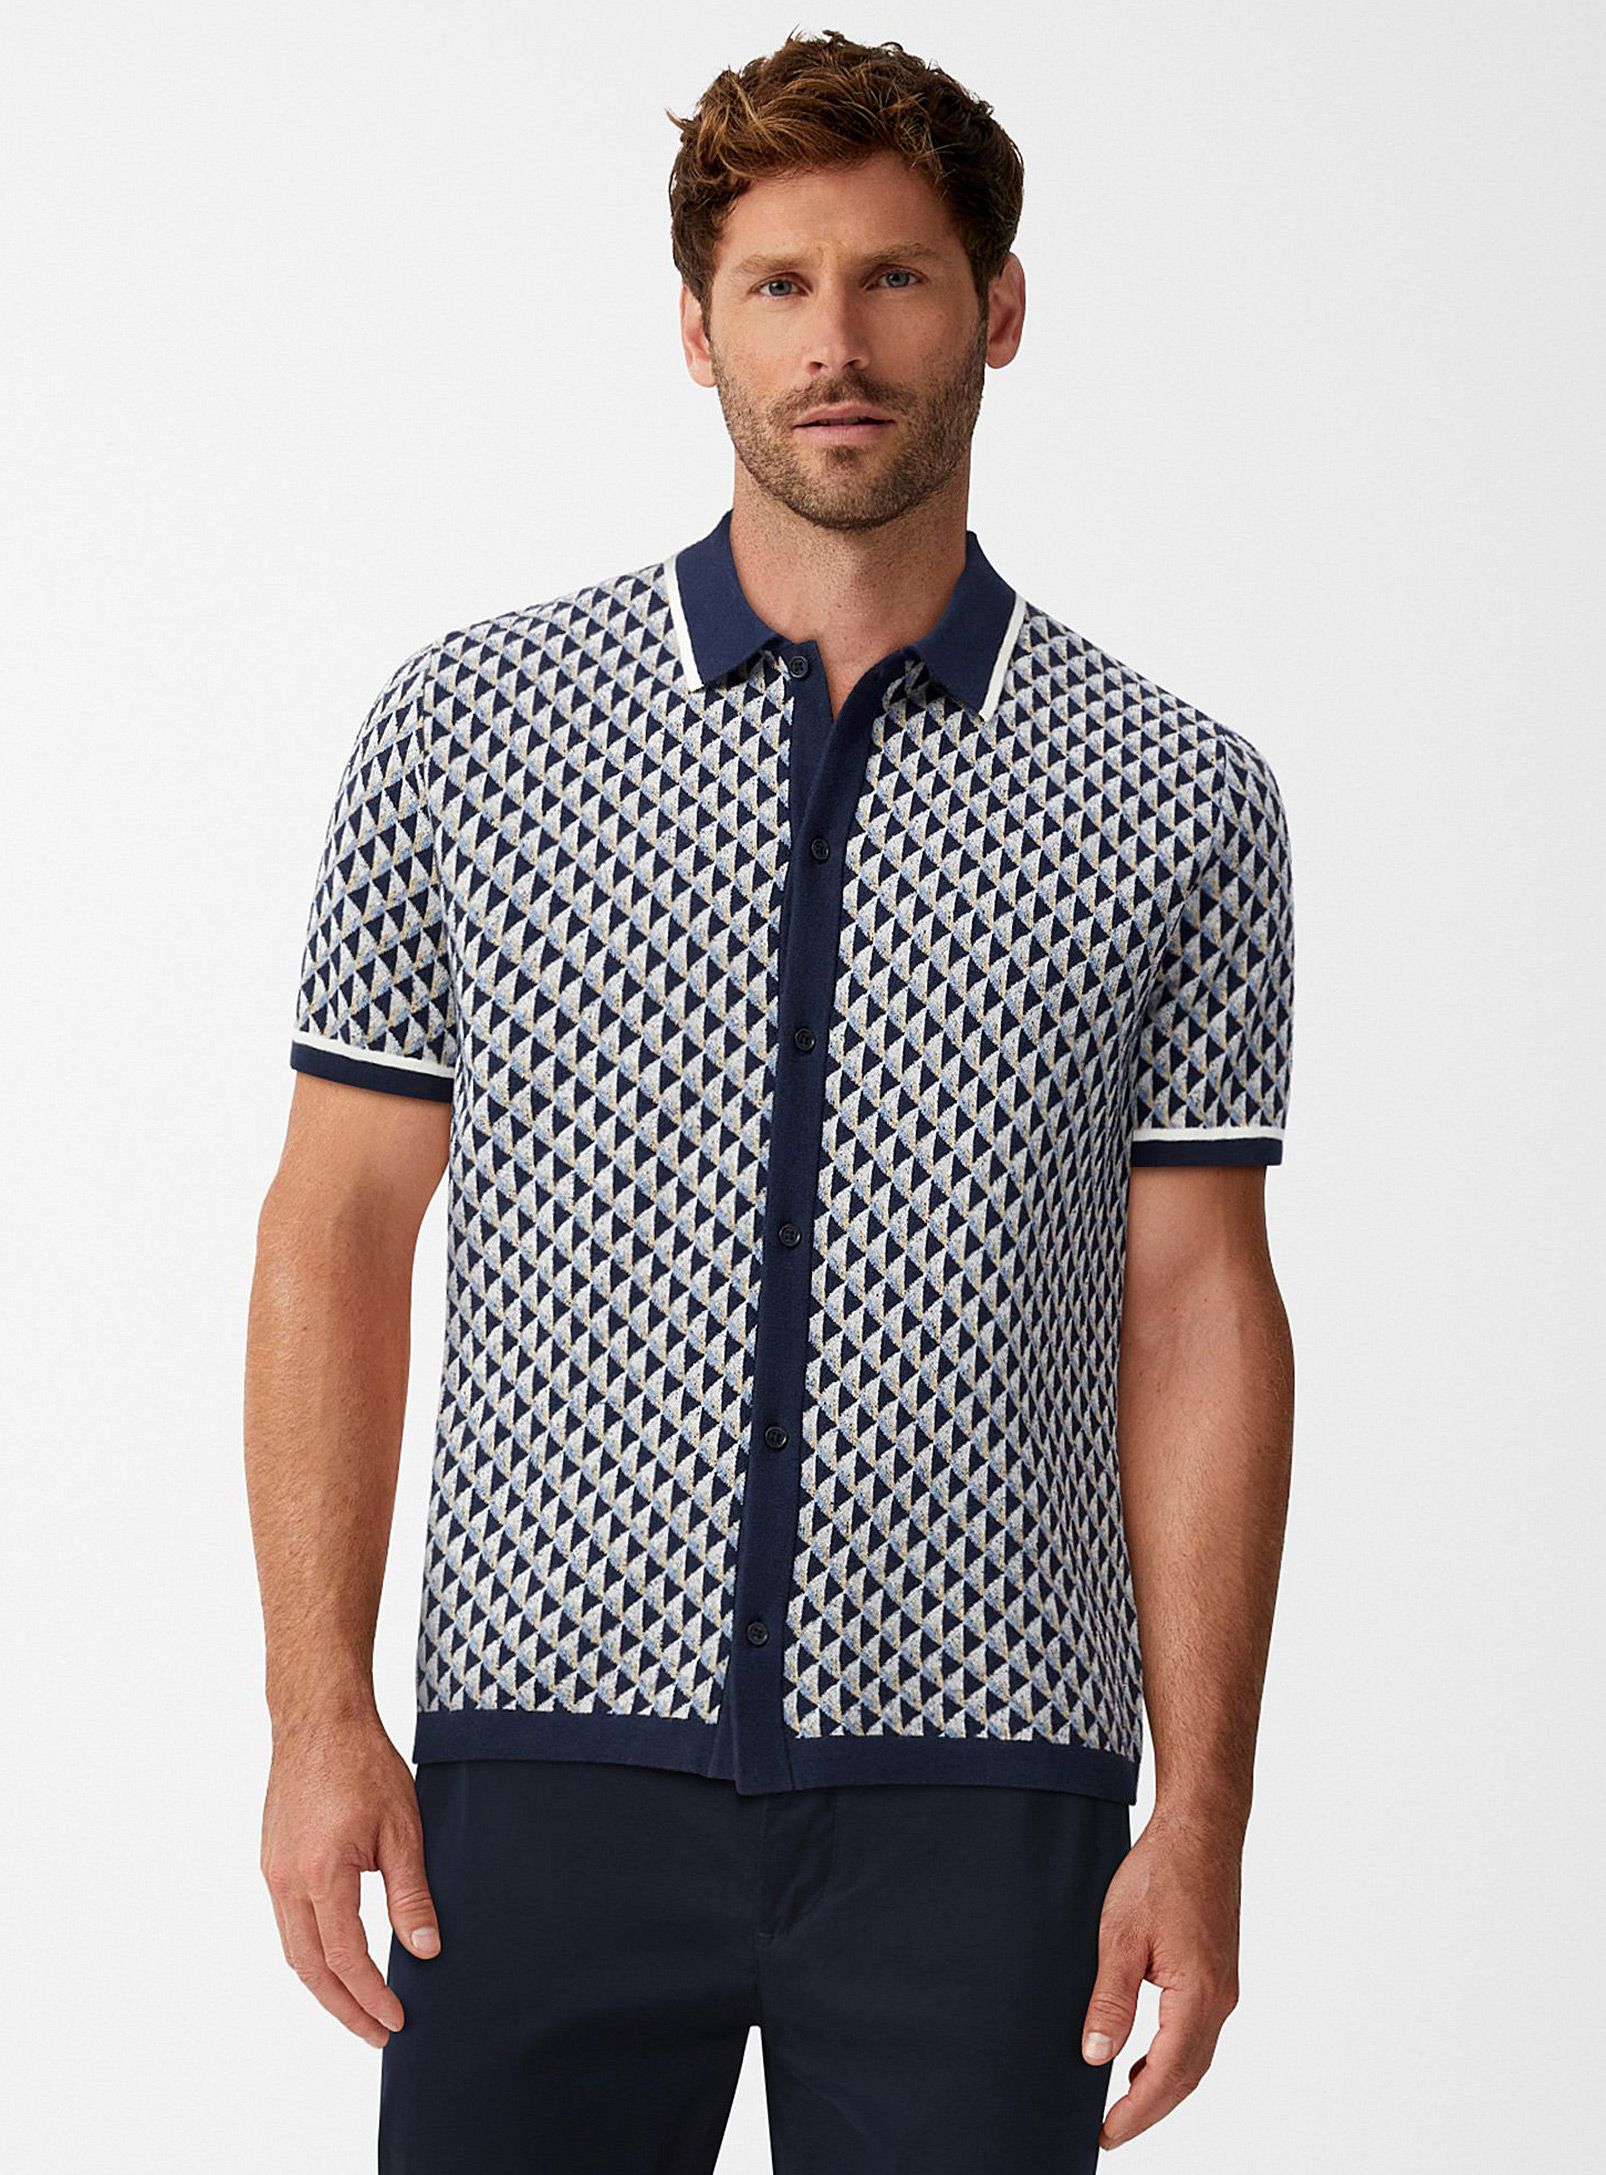 Olymp - La chemise tricot jacquard géo